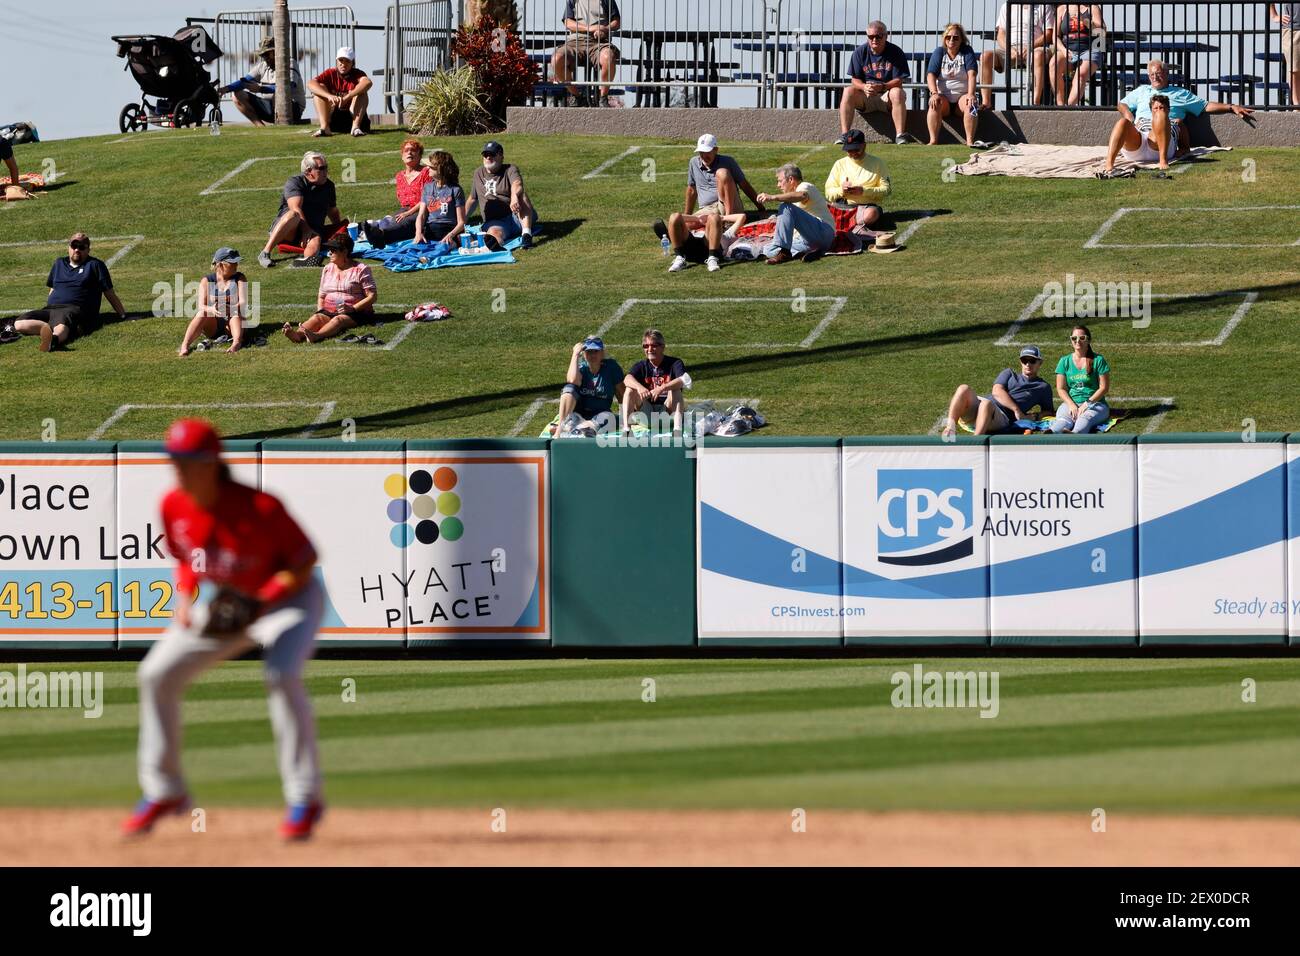 LAKELAND, FL - 3 MARZO: Vista generale come i tifosi sono socialmente distanziati in campo erba mentre si guarda una partita di baseball della Grapefruit League tra il Foto Stock